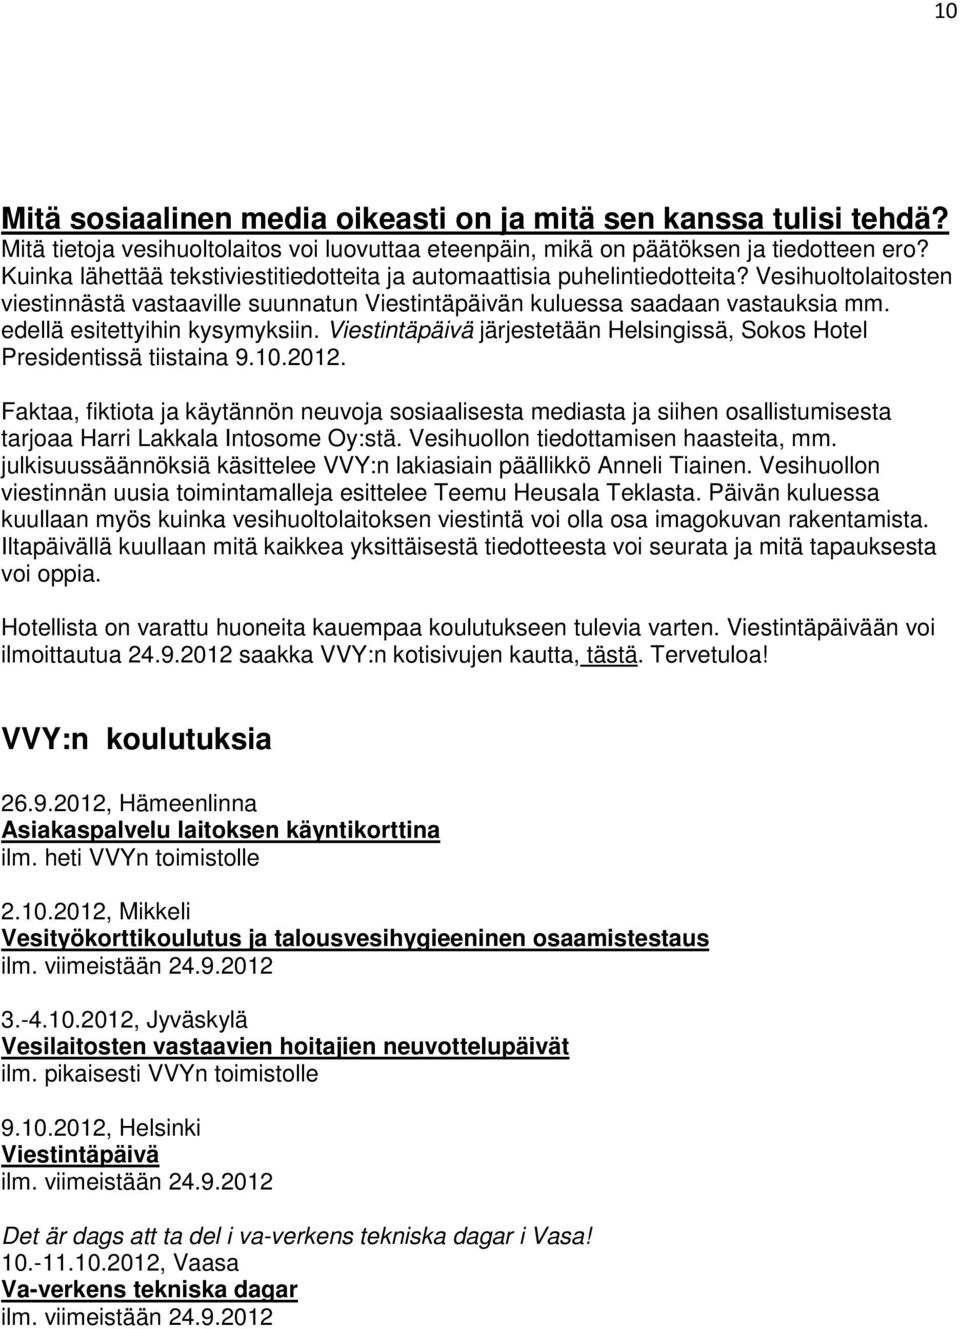 edellä esitettyihin kysymyksiin. Viestintäpäivä järjestetään Helsingissä, Sokos Hotel Presidentissä tiistaina 9.10.2012.